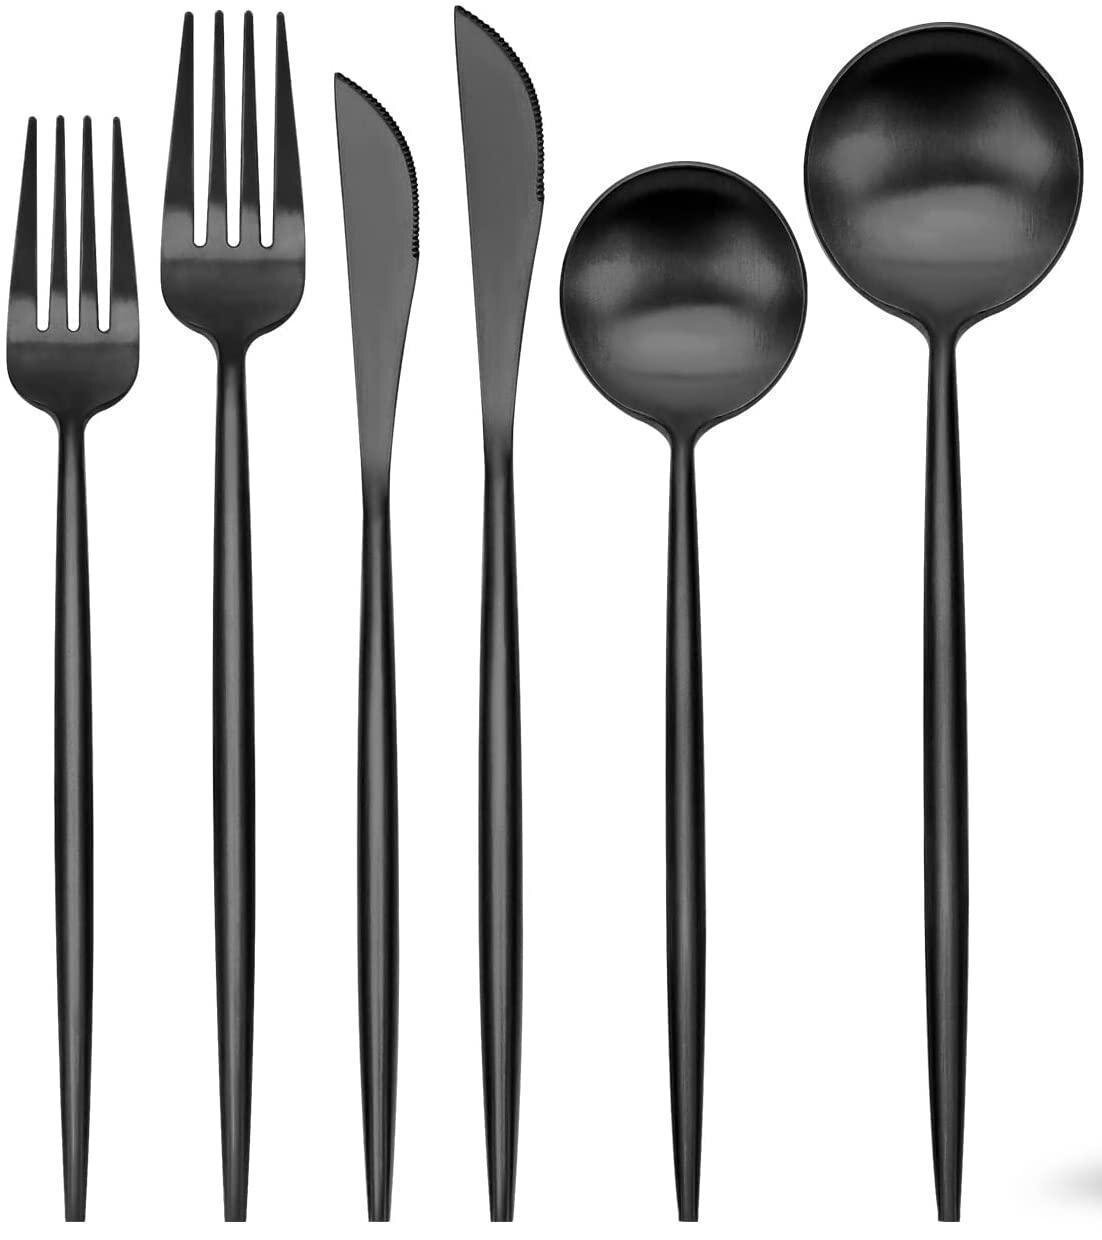 5pcs Matte Black Stainless Steel Forks For Salad,Dessert,Fruit Flatware Set 4.8“ 